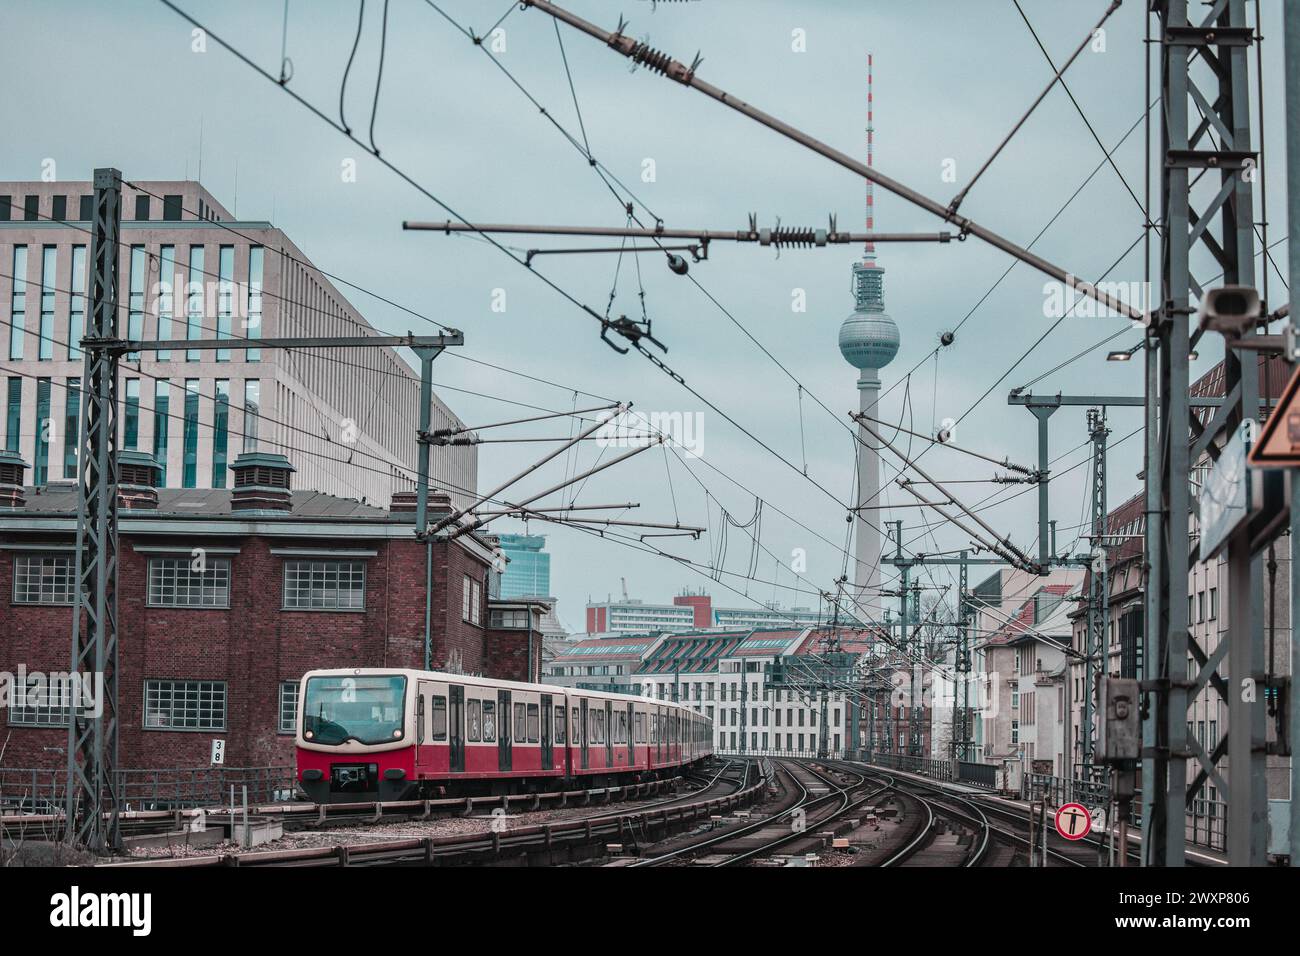 Le train de banlieue ou SBahn de Berlin approche de la gare Friedrichstrasse. Transports en commun à Berlin, maisons typiques visibles et point de repère comme tour de télévision Banque D'Images